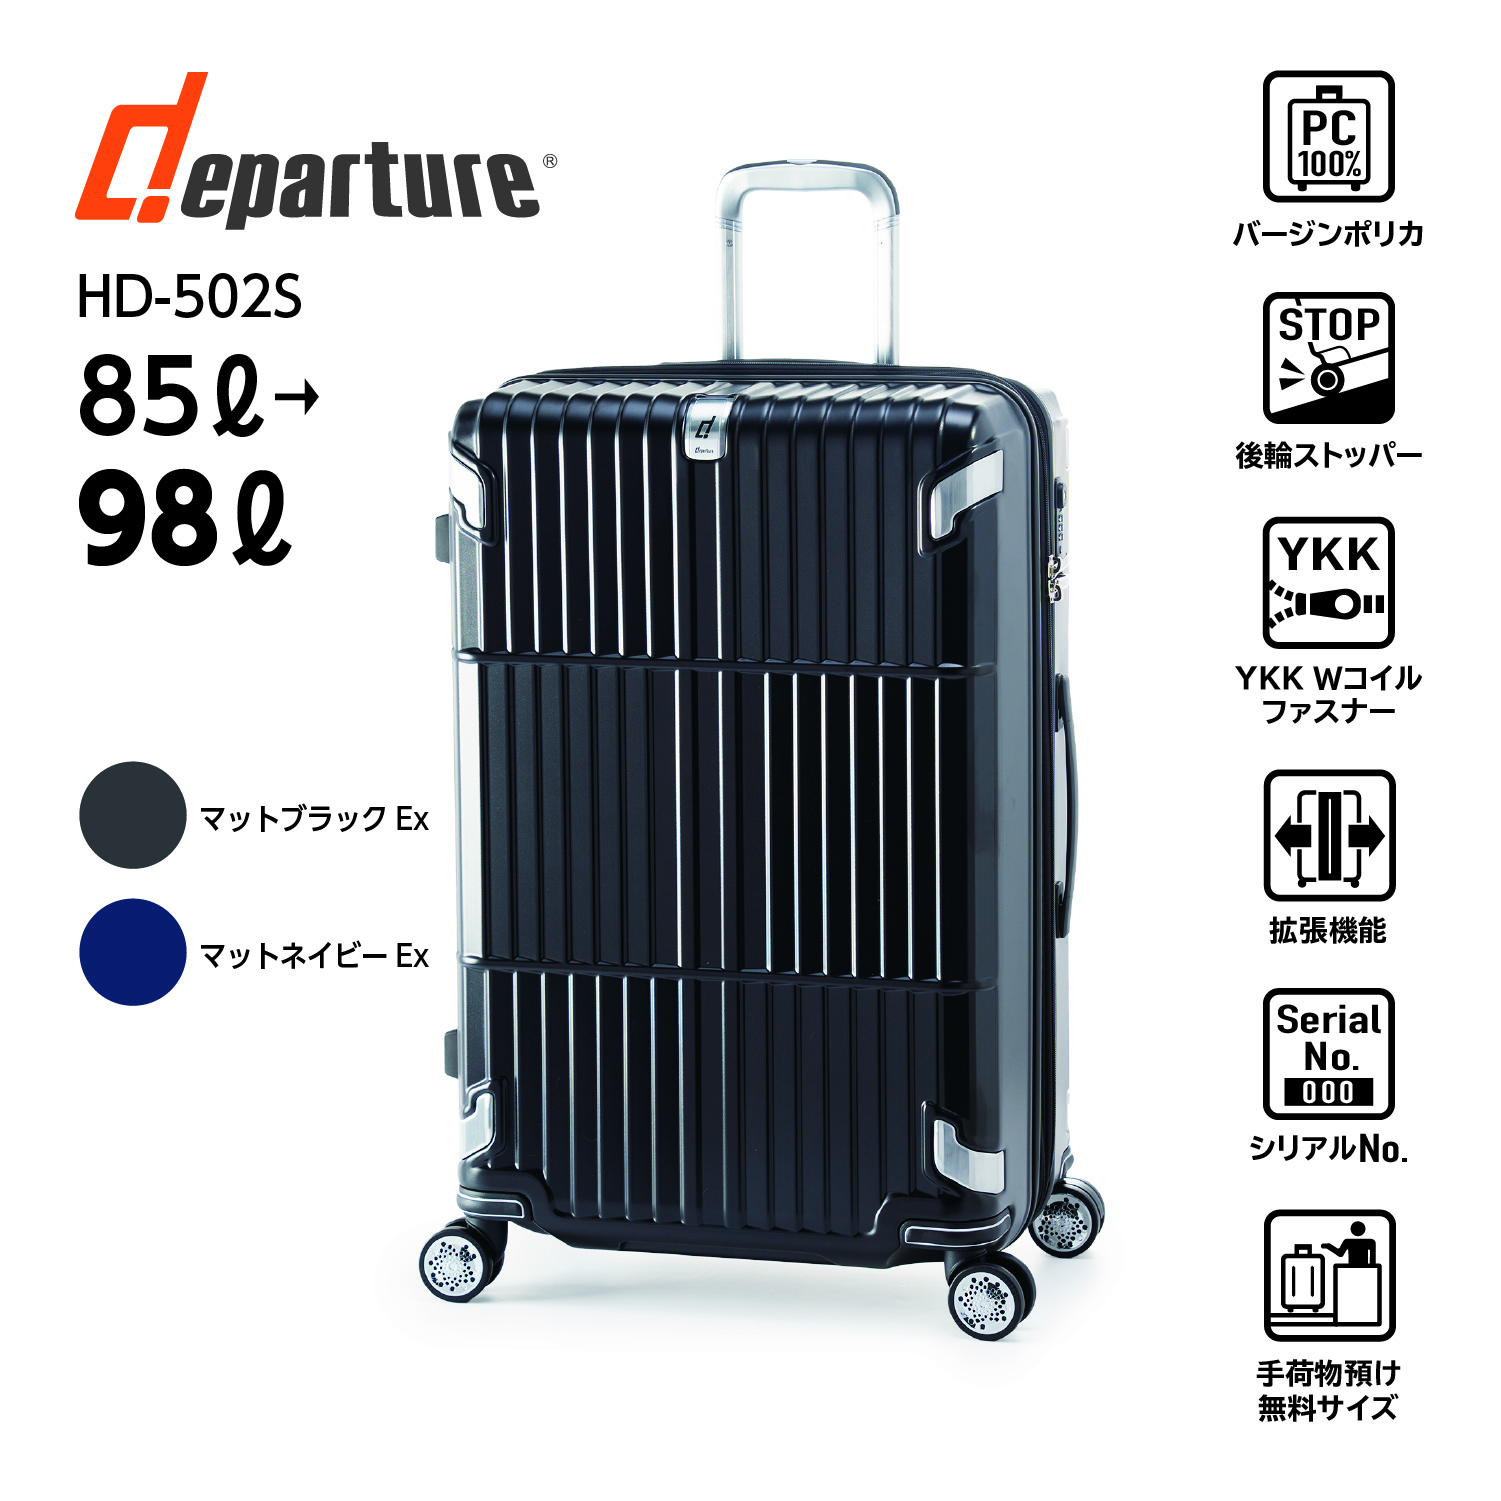 ハードキャリー | アジア・ラゲージ 公式サイト | Asia Luggage Inc.